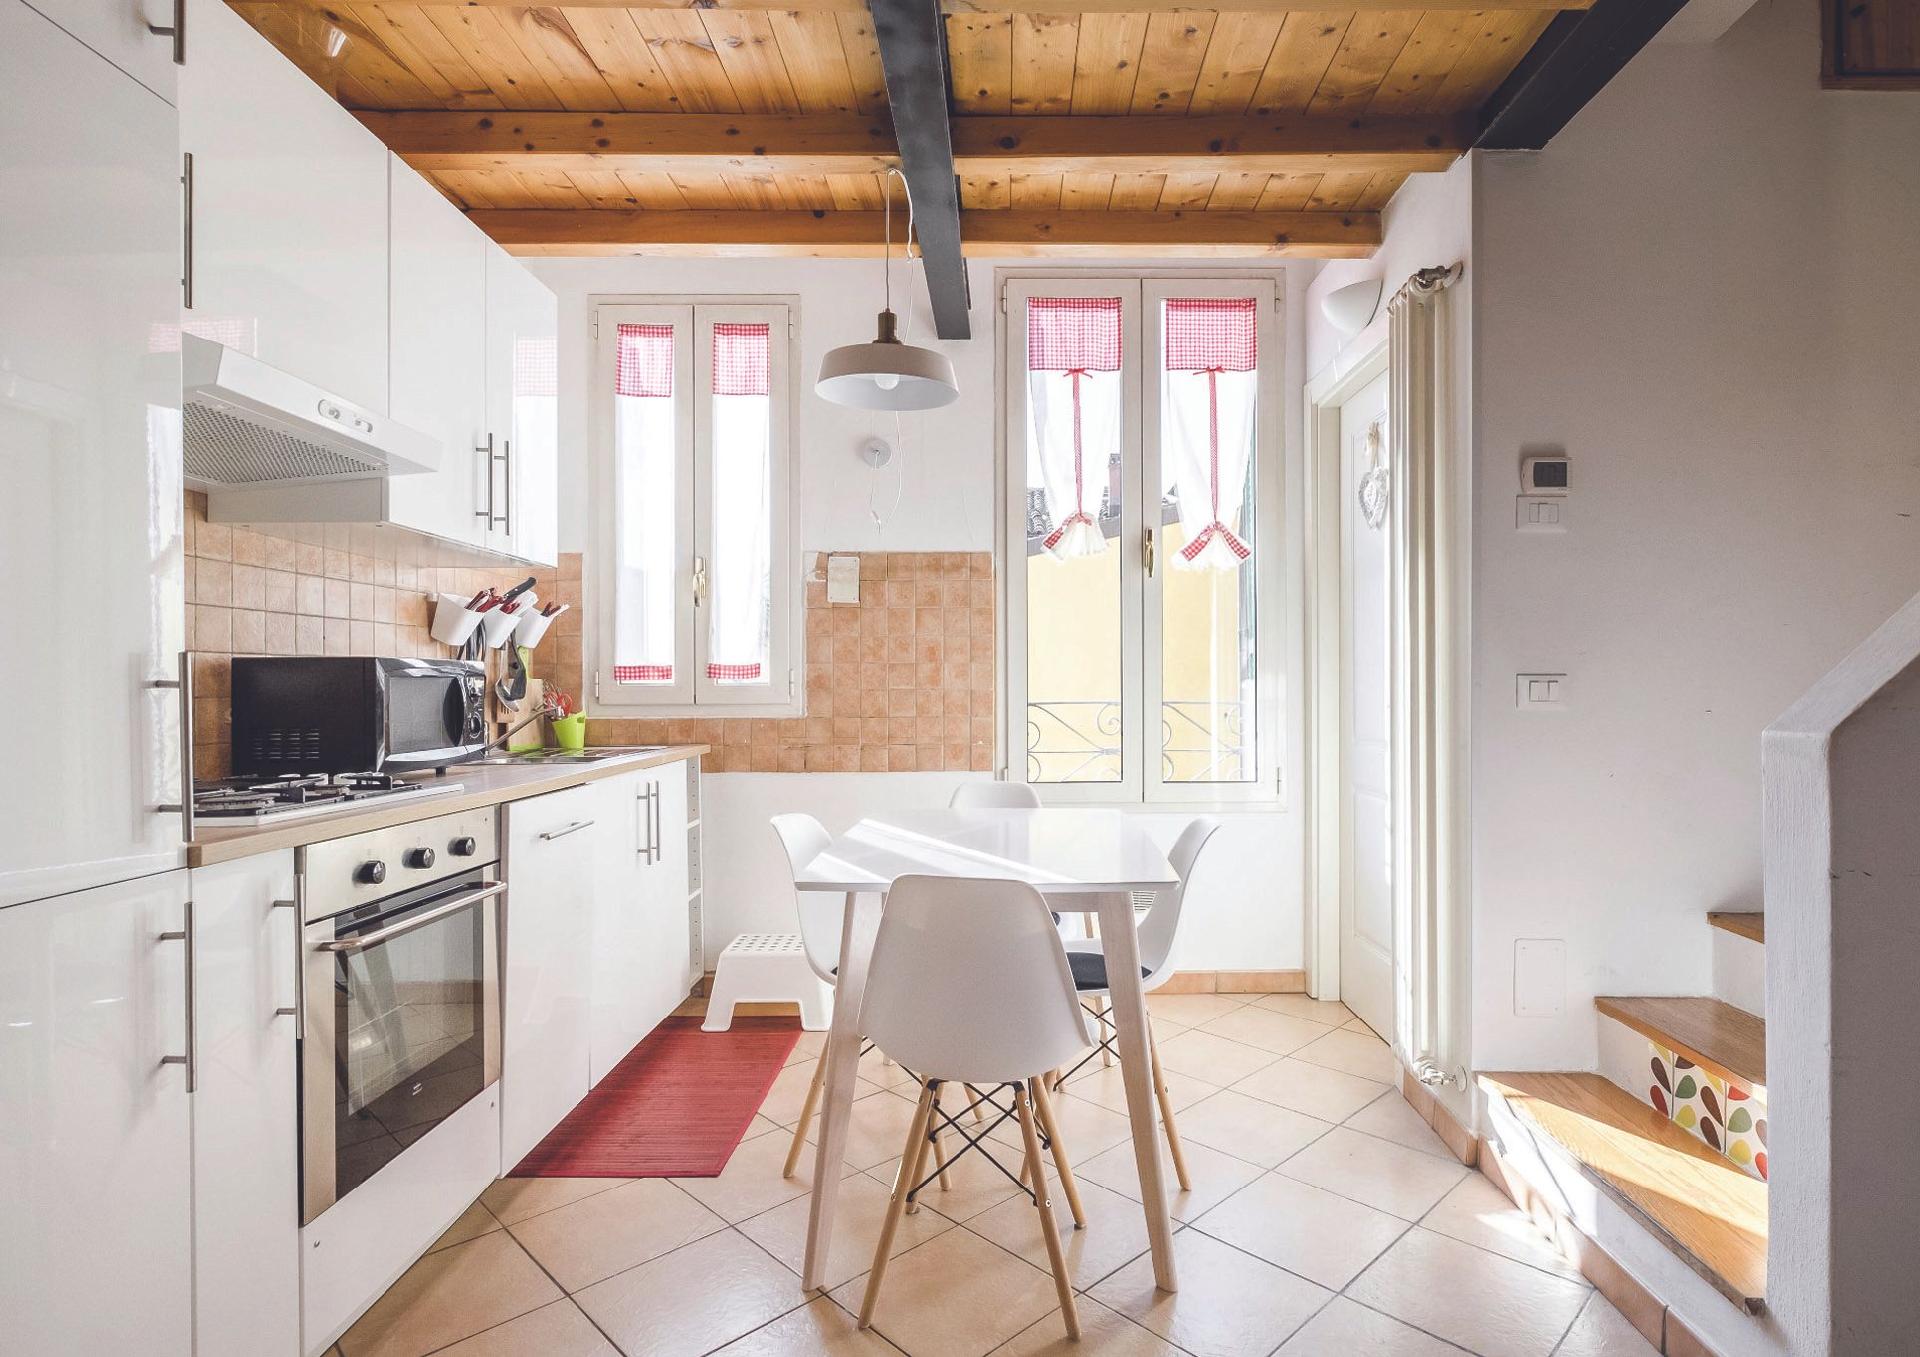 Ferienwohnung für 2 Personen ca. 50 m² i Ferienwohnung in Italien